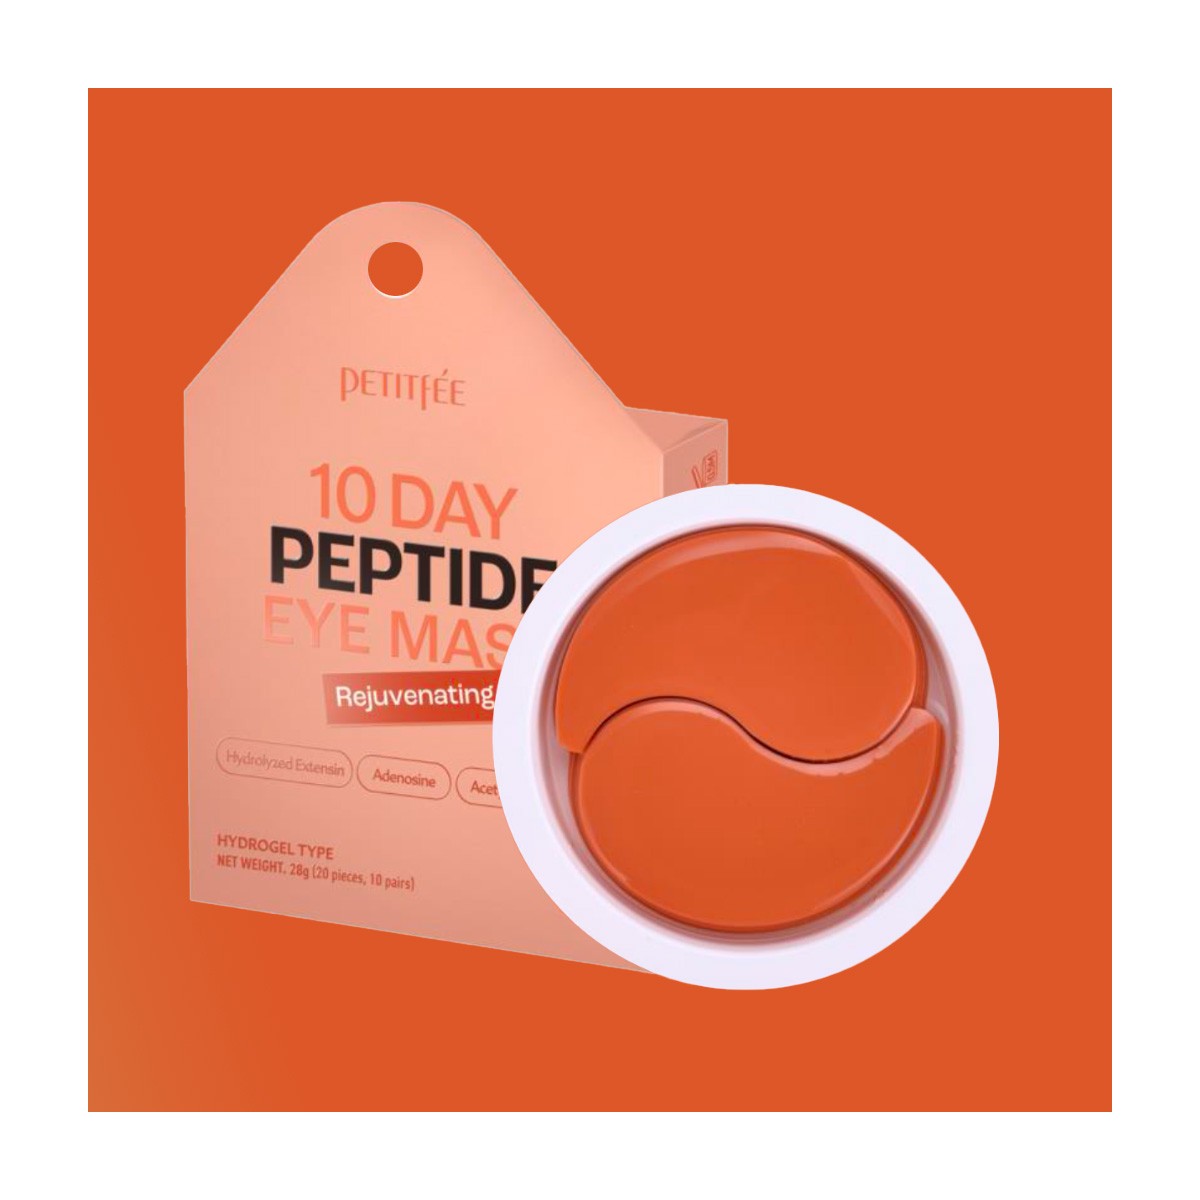 Contorno de Ojos al mejor precio: Parches con Péptidos Petitfée 10 Day Peptide Eye Mask Rejuvenating de Petitfée en Skin Thinks - Tratamiento Anti-Edad